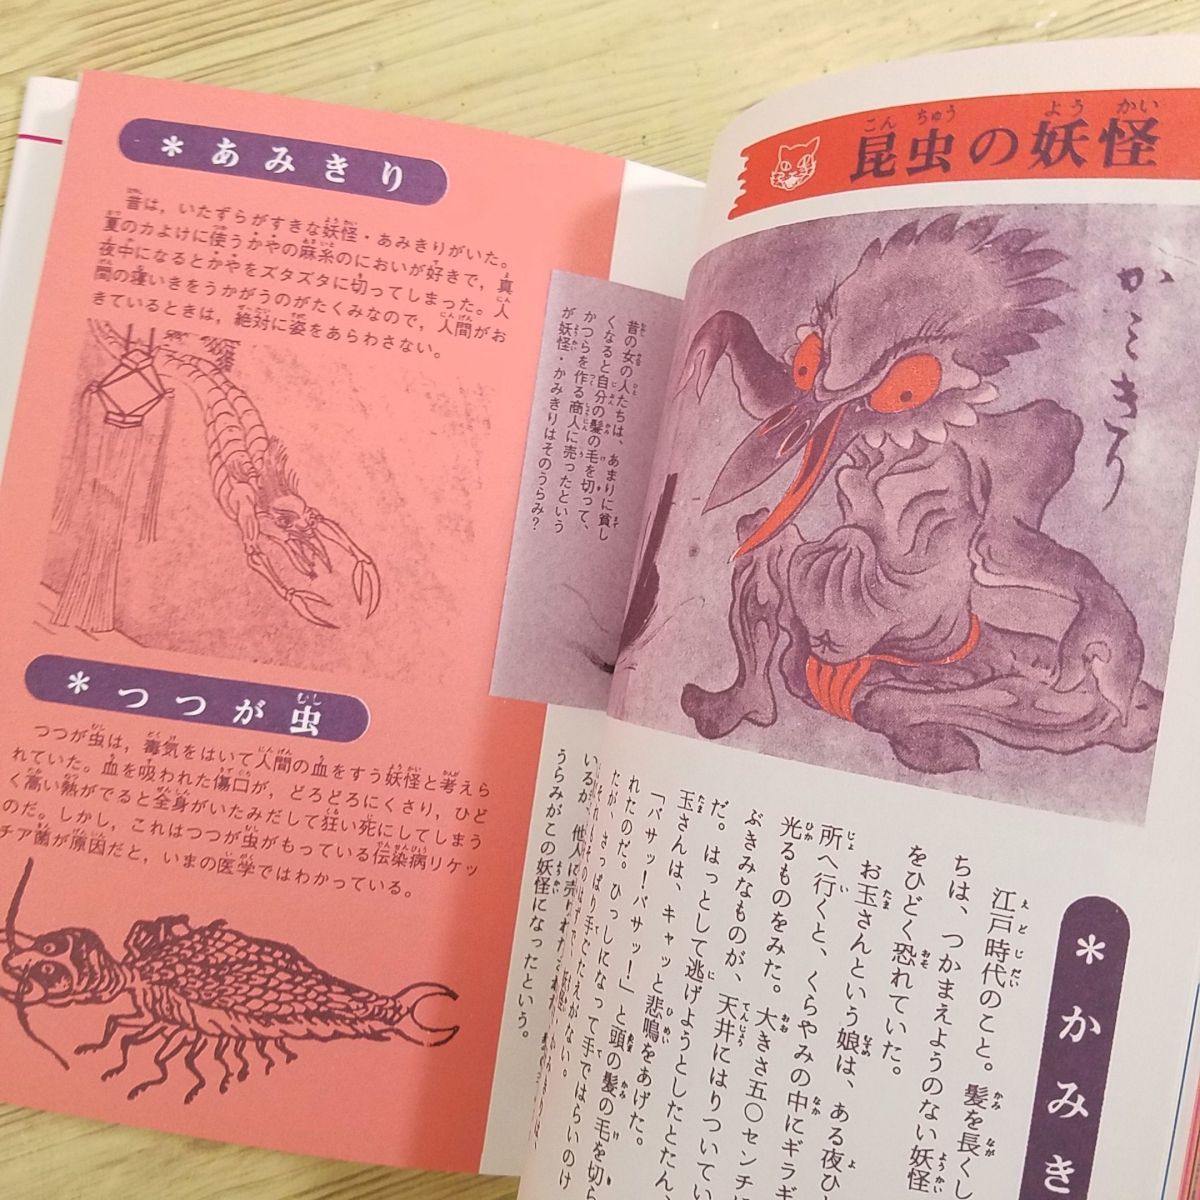  иллюстрированная книга [.... тяпка .. Япония .. иллюстрированная книга ( переиздание )( obi * slip имеется )].. dot com Sato иметь документ Jaguar задний s